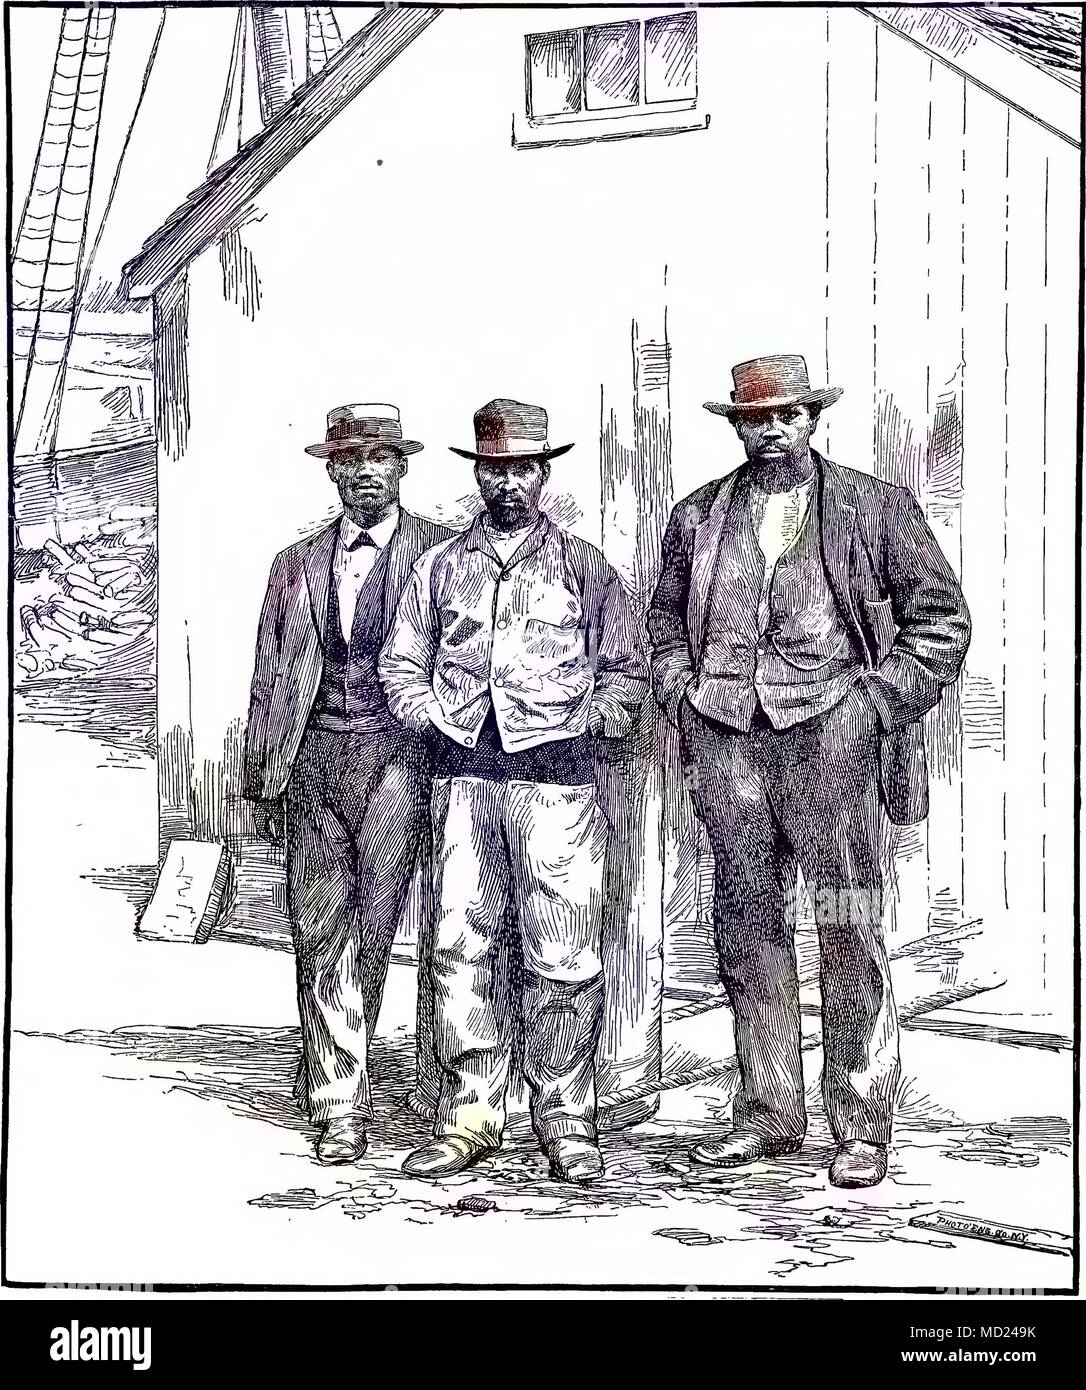 La gravure de cap-verdienne trois hommes debout sur un quai, New Bedford, Massachusetts, 1880. Avec la permission de Internet Archive. Remarque : l'image a été colorisée numériquement à l'aide d'un processus moderne. Les couleurs peuvent ne pas être exacts à l'autre. () Banque D'Images